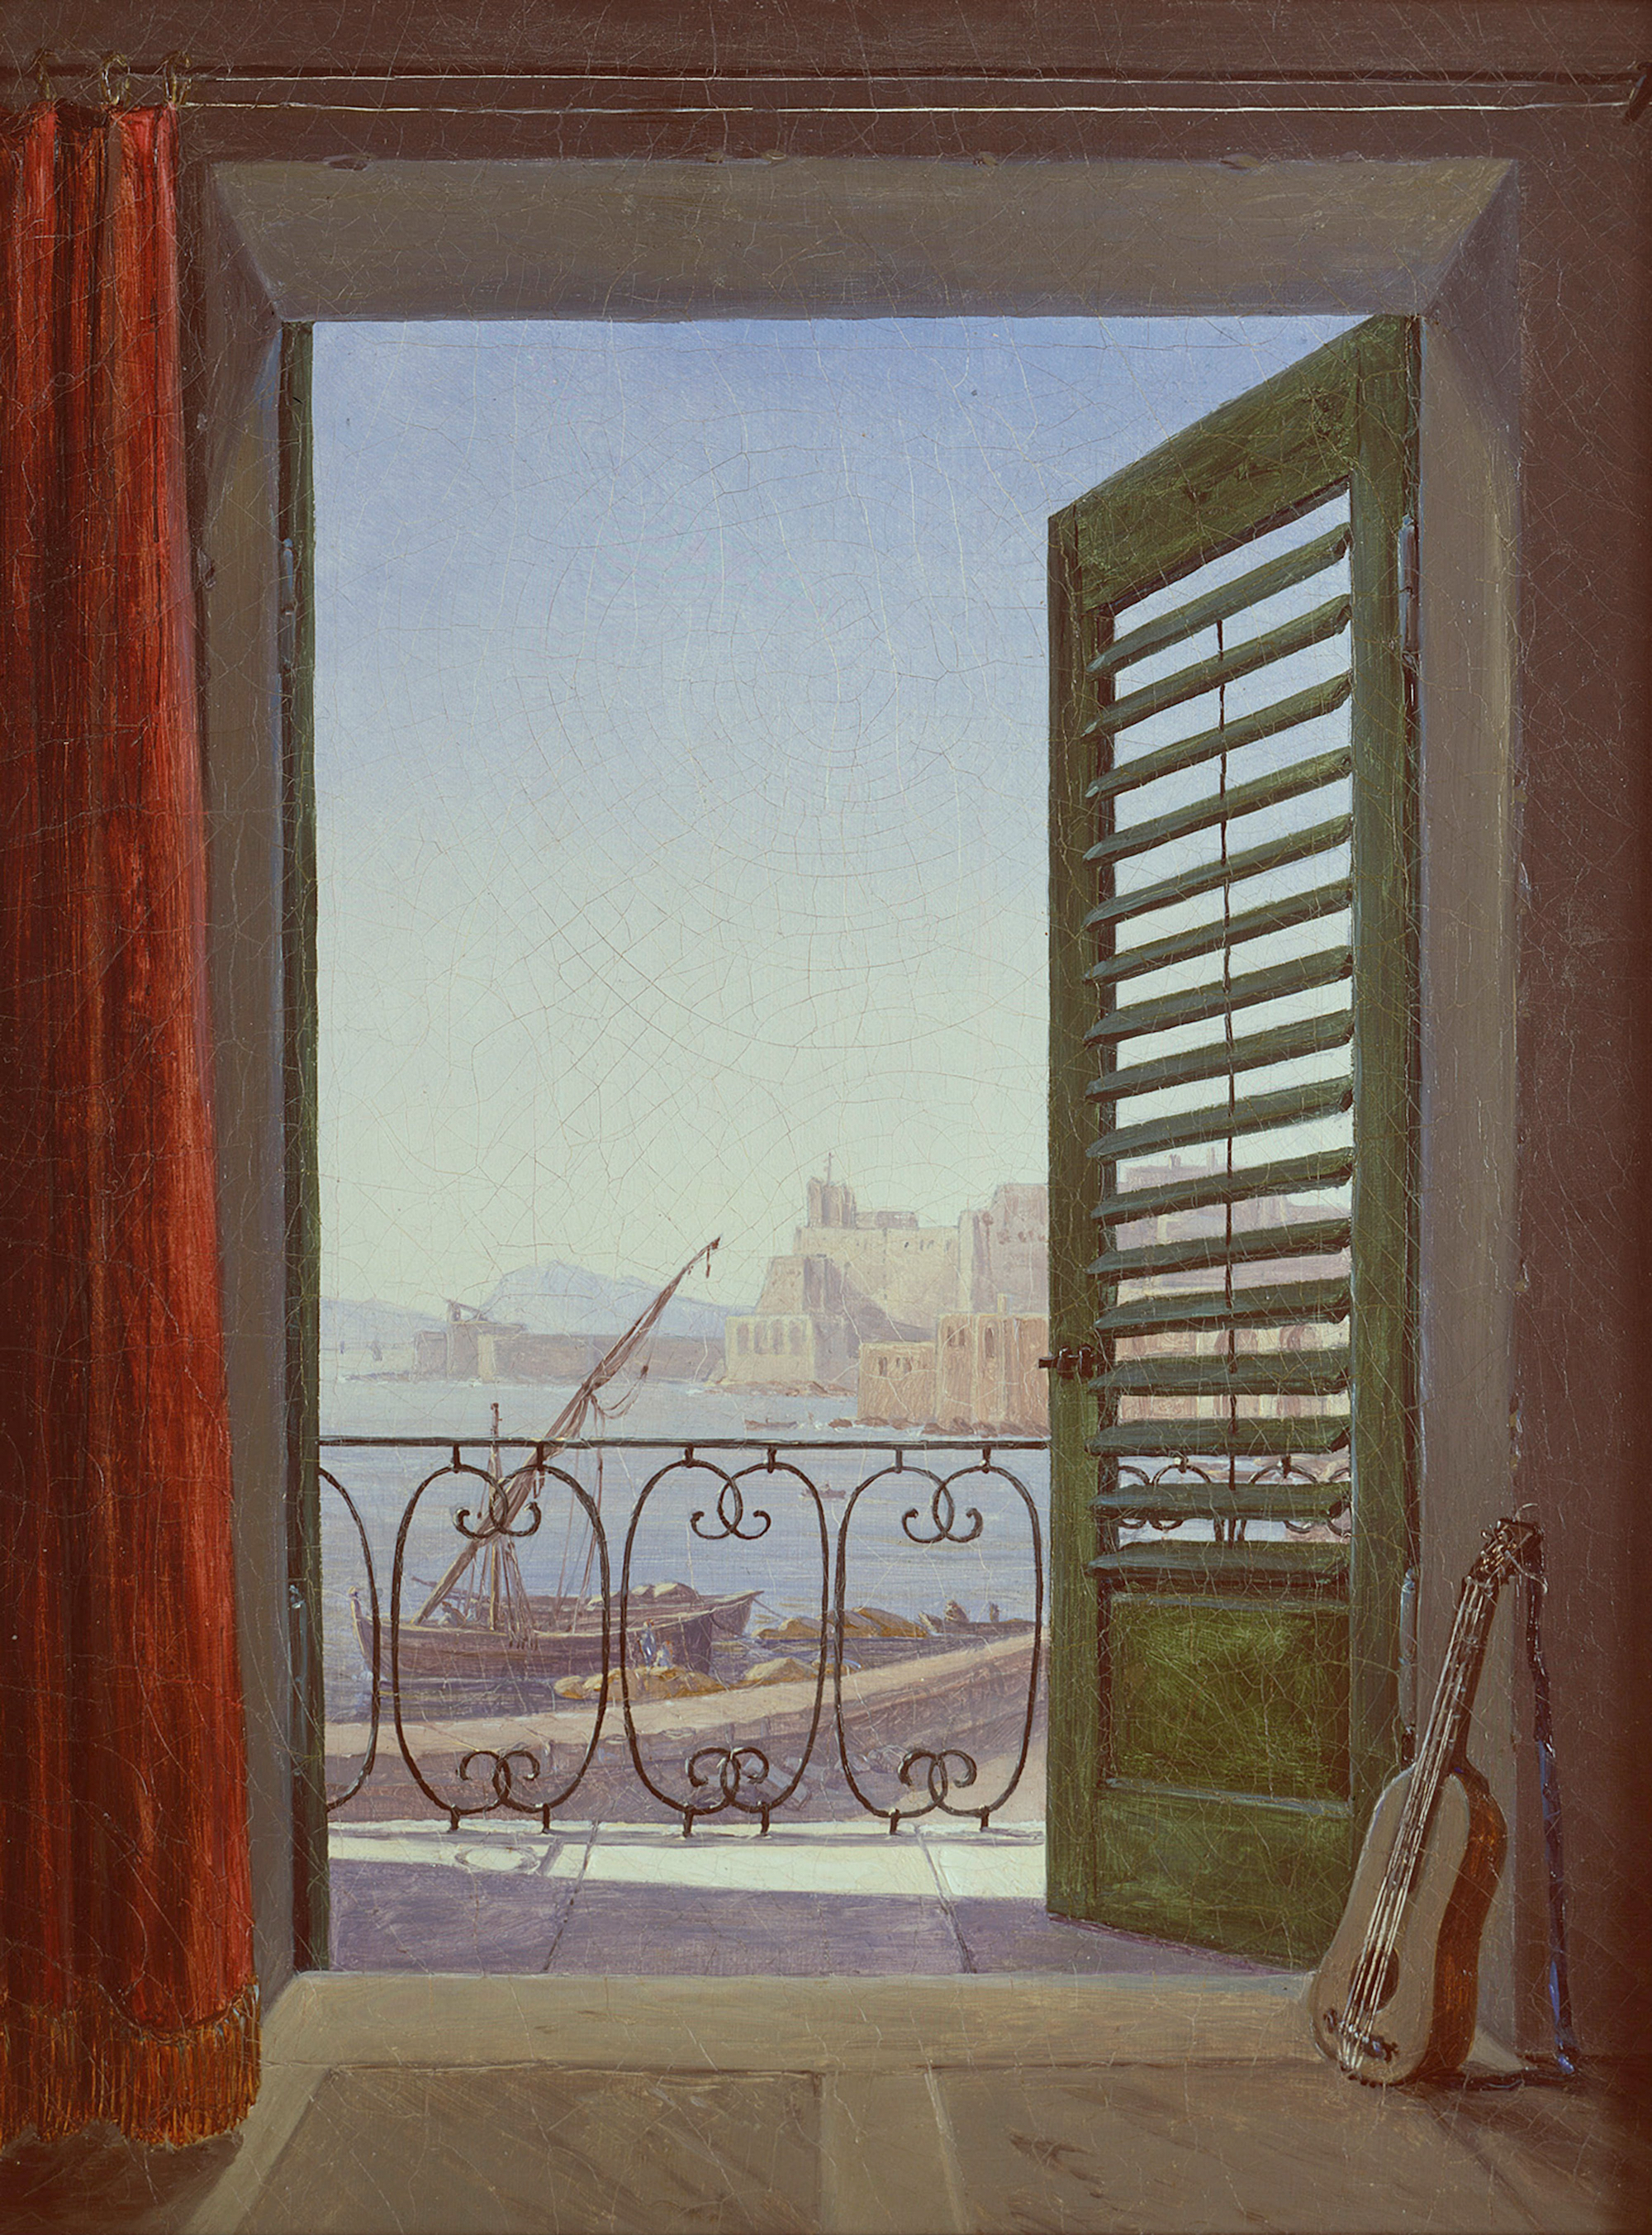 ナポリ港の眺め by Carl Gustav Carus - 1820年から1830年頃 - 213.0 x 284.0 cm 